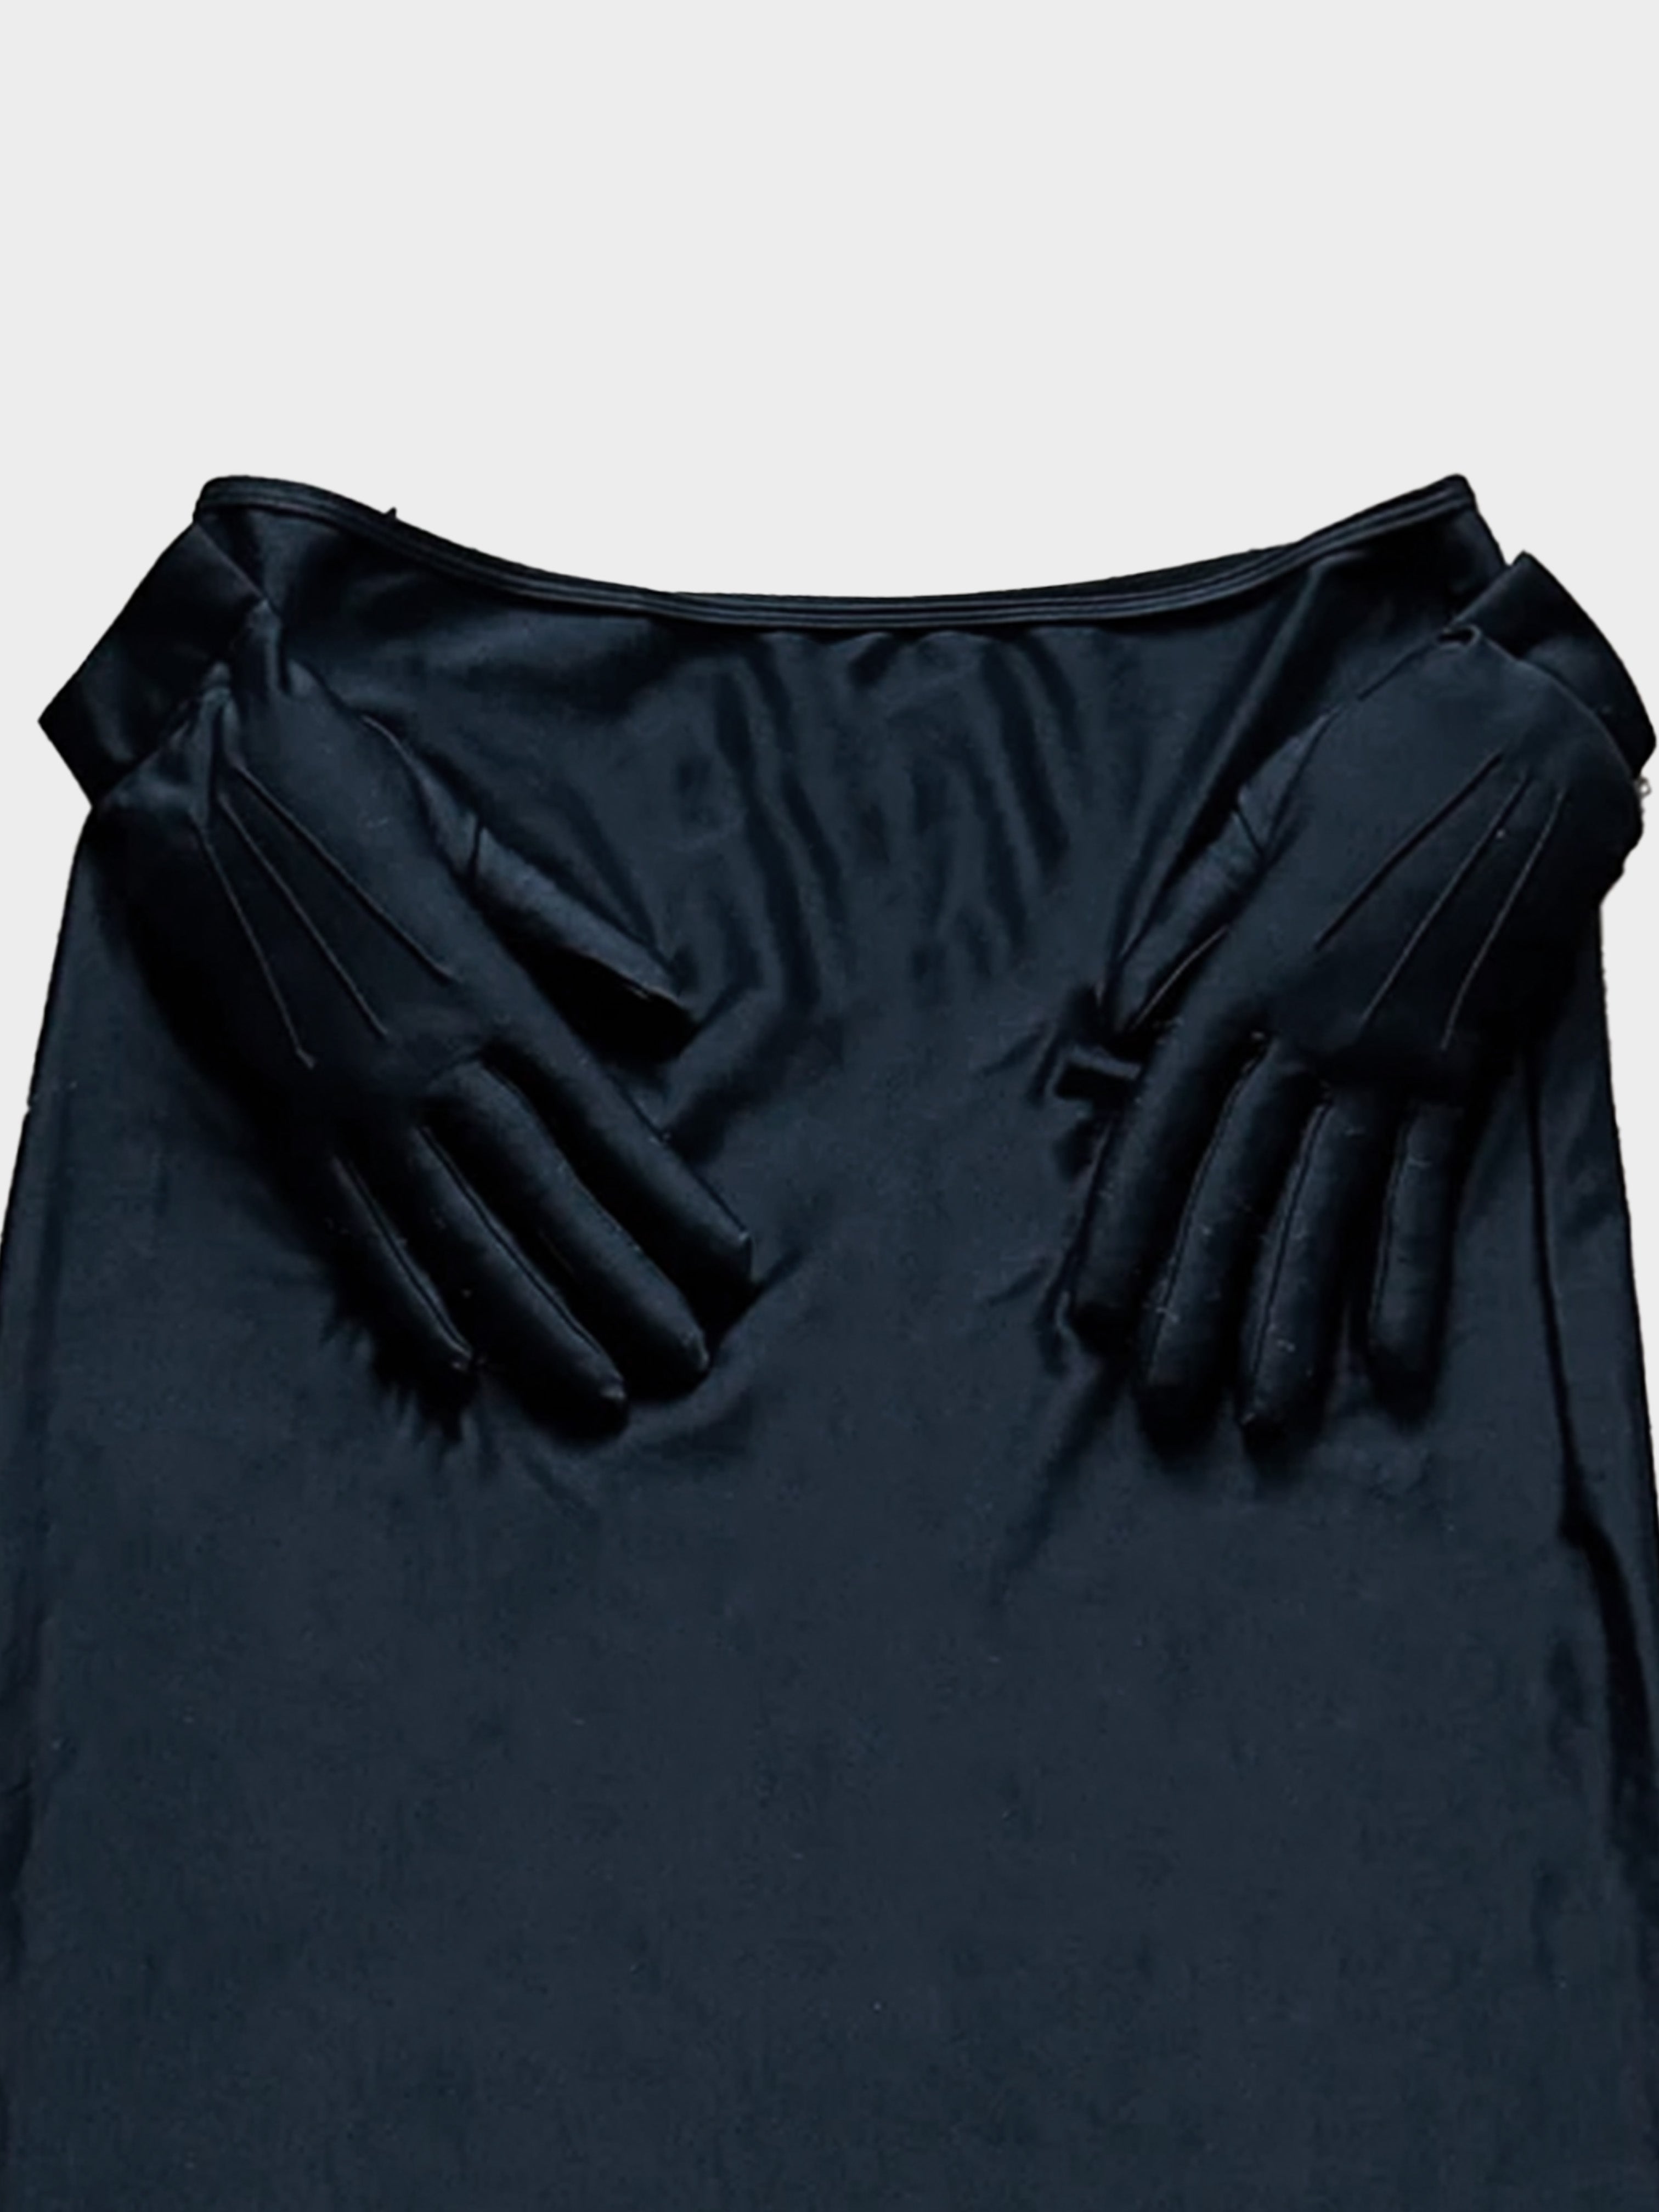 Comme des Garçons FW 2007 Black Glove Skirt